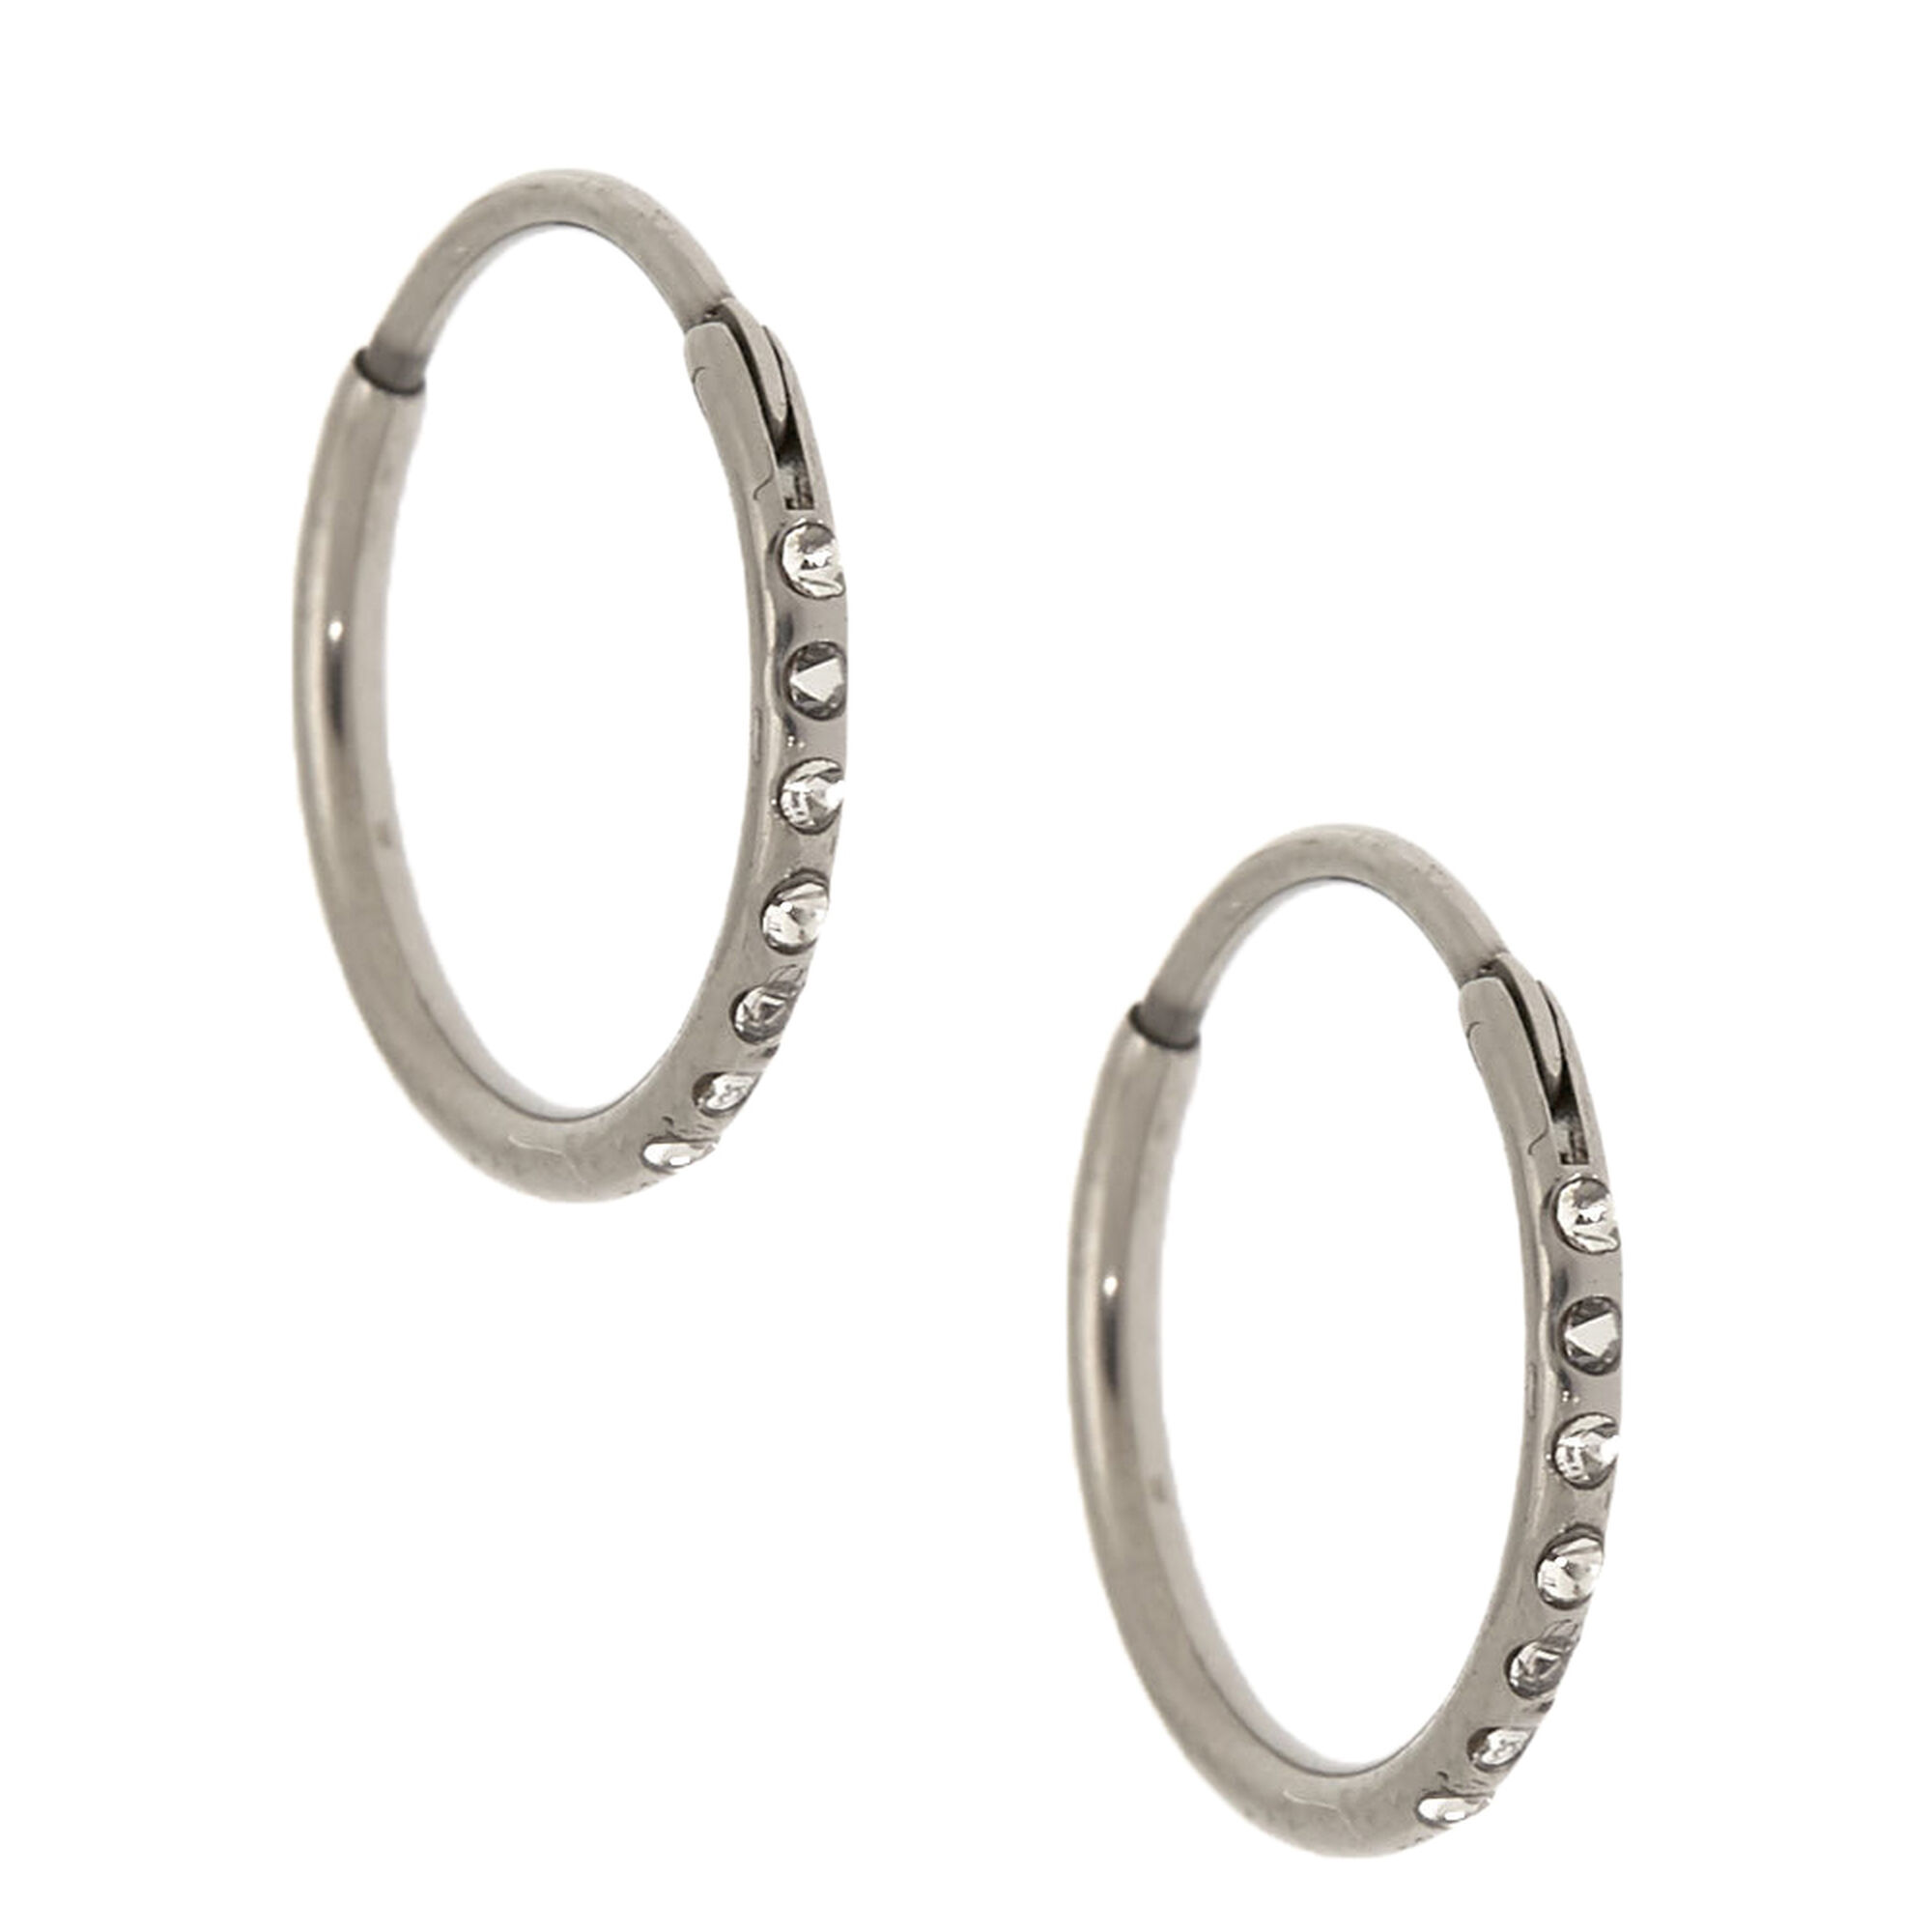 View Claires Titanium 10MM Sleek Crystal Hoop Earrings Silver information